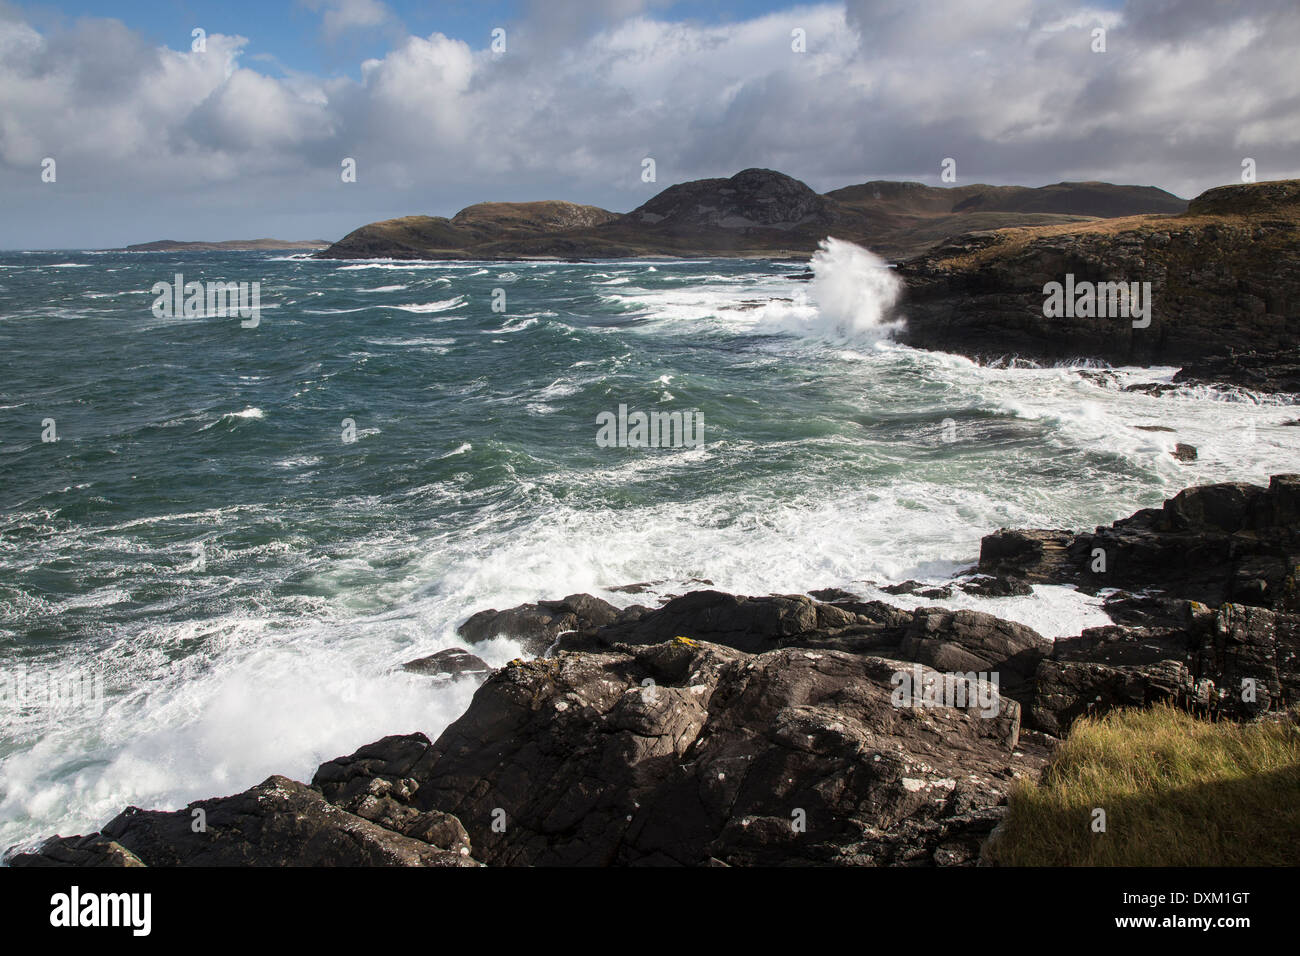 Rough sea at Point of Ardnamurchan, Scotland Stock Photo